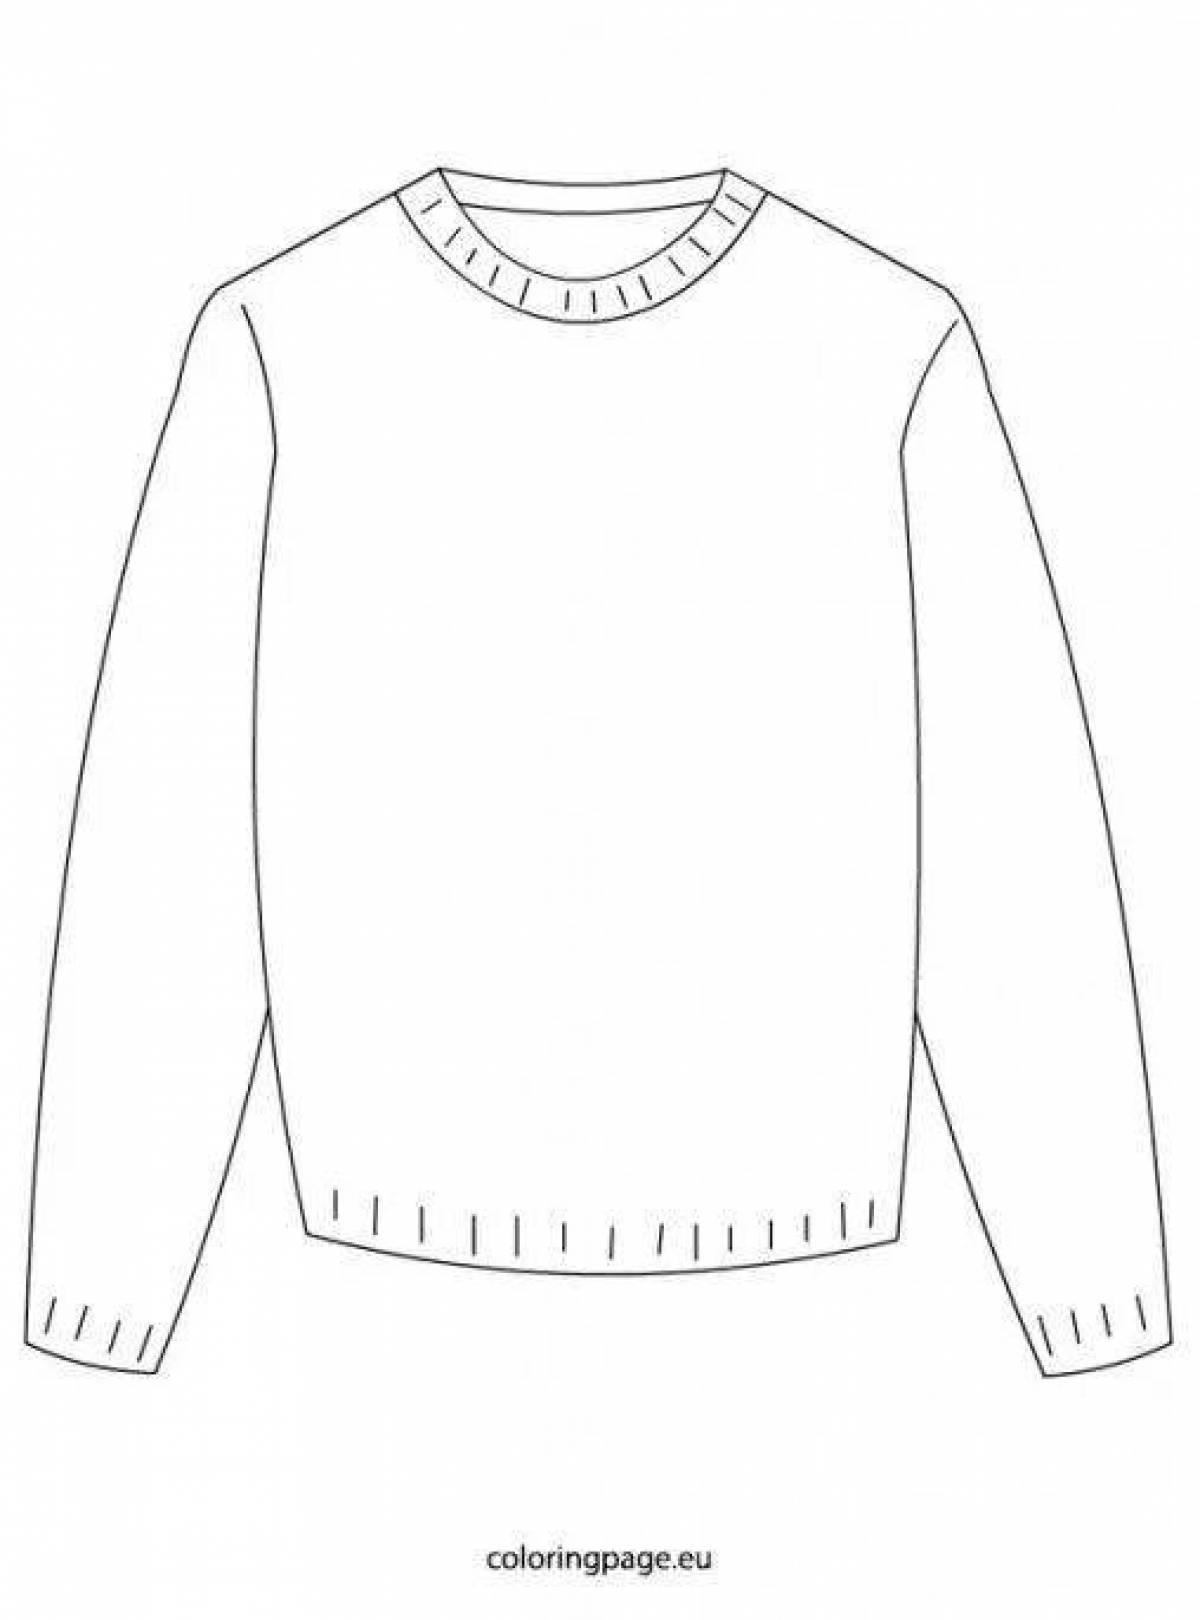 Раскраска изысканный свитер для детей 4-5 лет